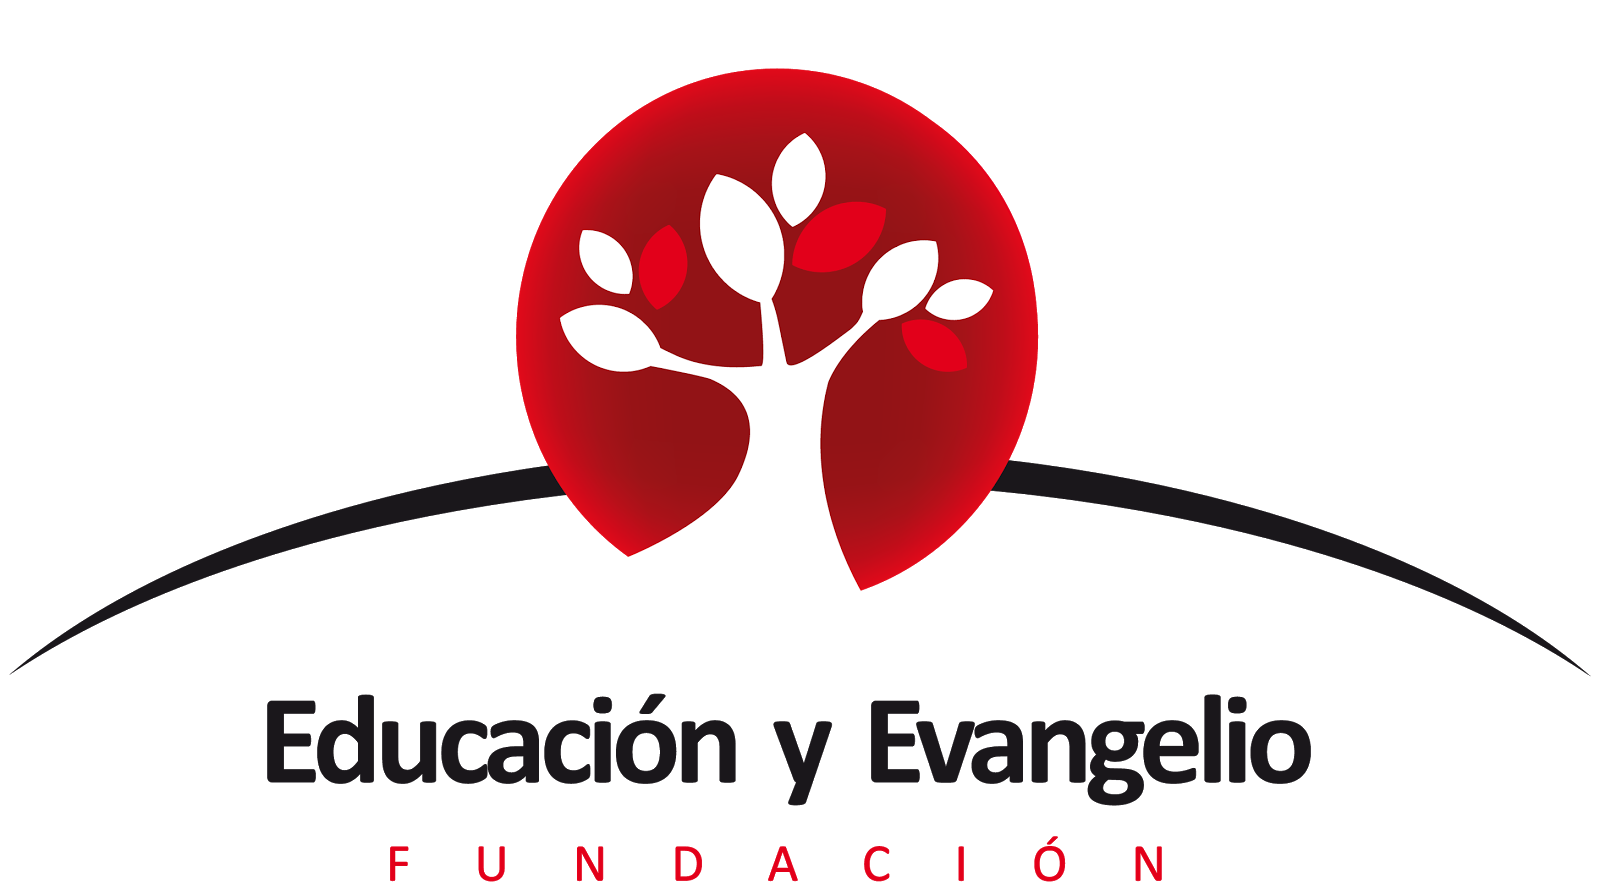 Fundación Educación y Evangelio